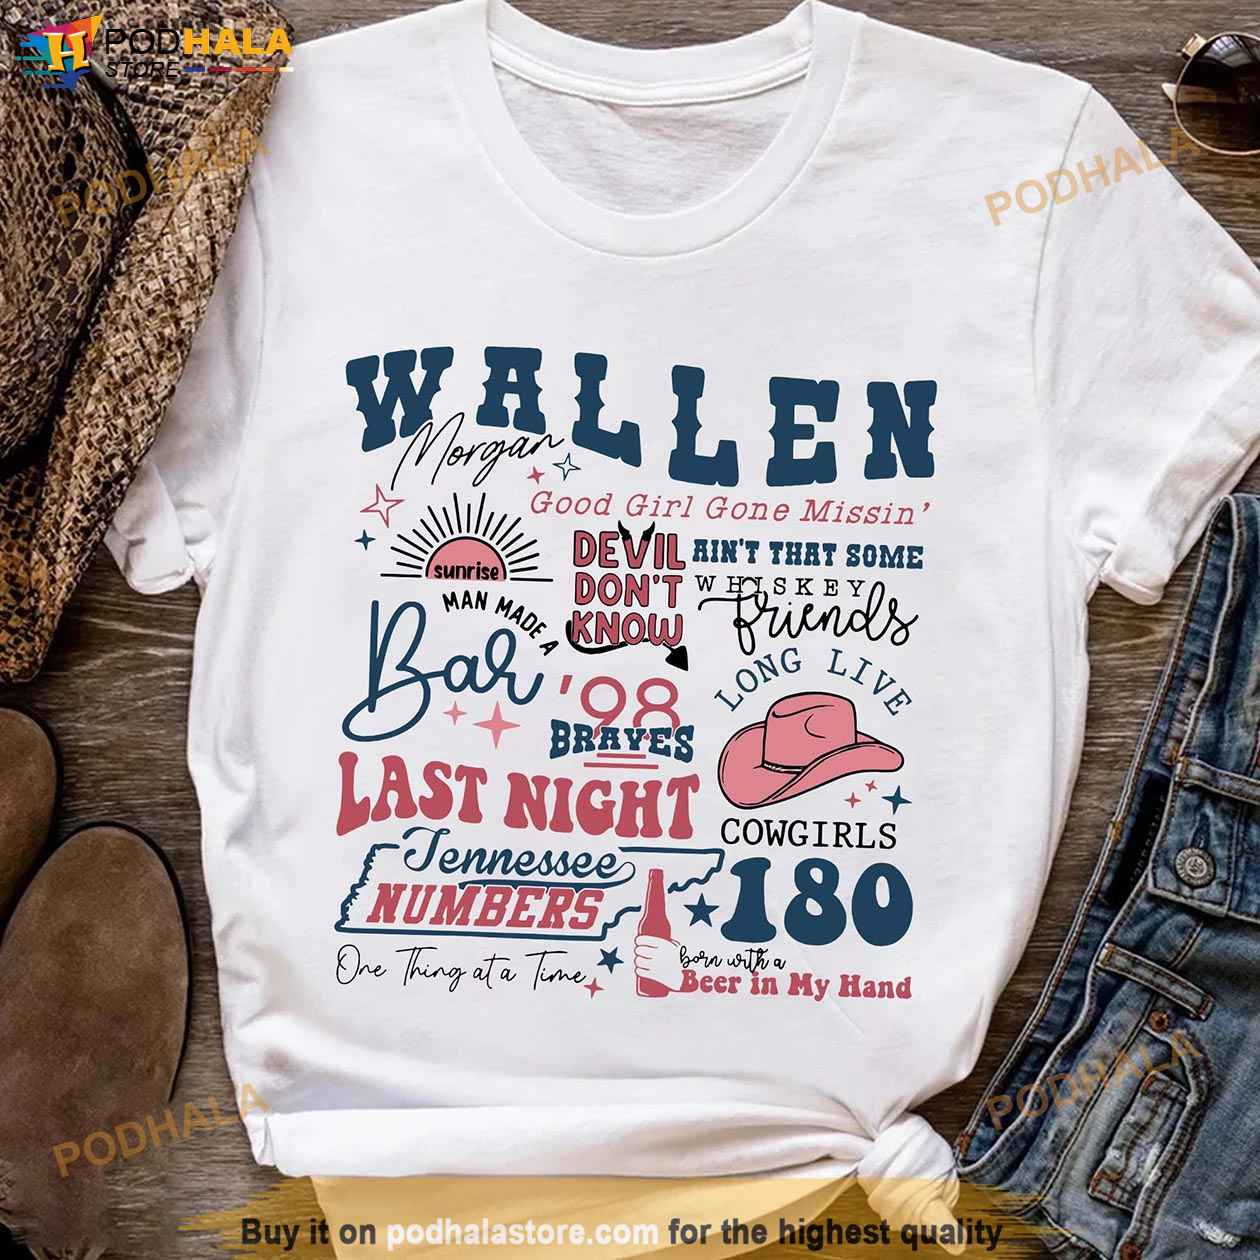 Last Night Wallen Tee Sweatshirt Morgan Wallen Concert T Shirt - Happy  Place for Music Lovers